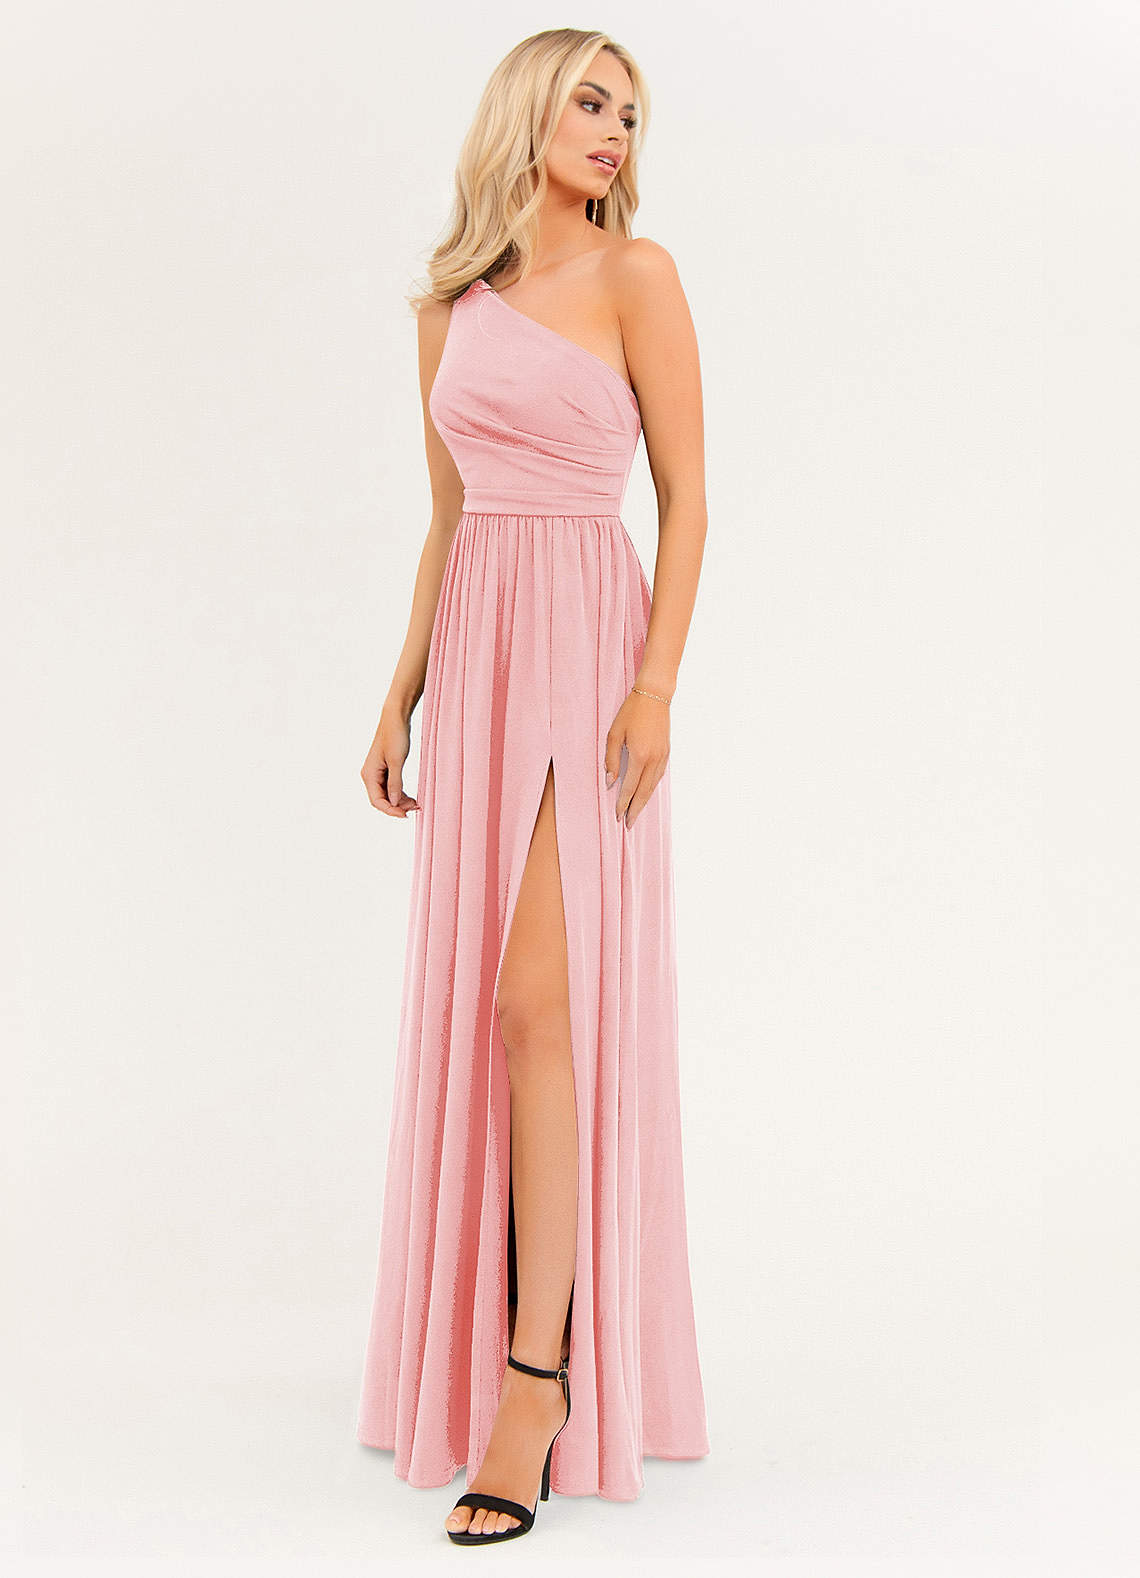 Buy Audstro. Blush Pink Women Formal Suit at